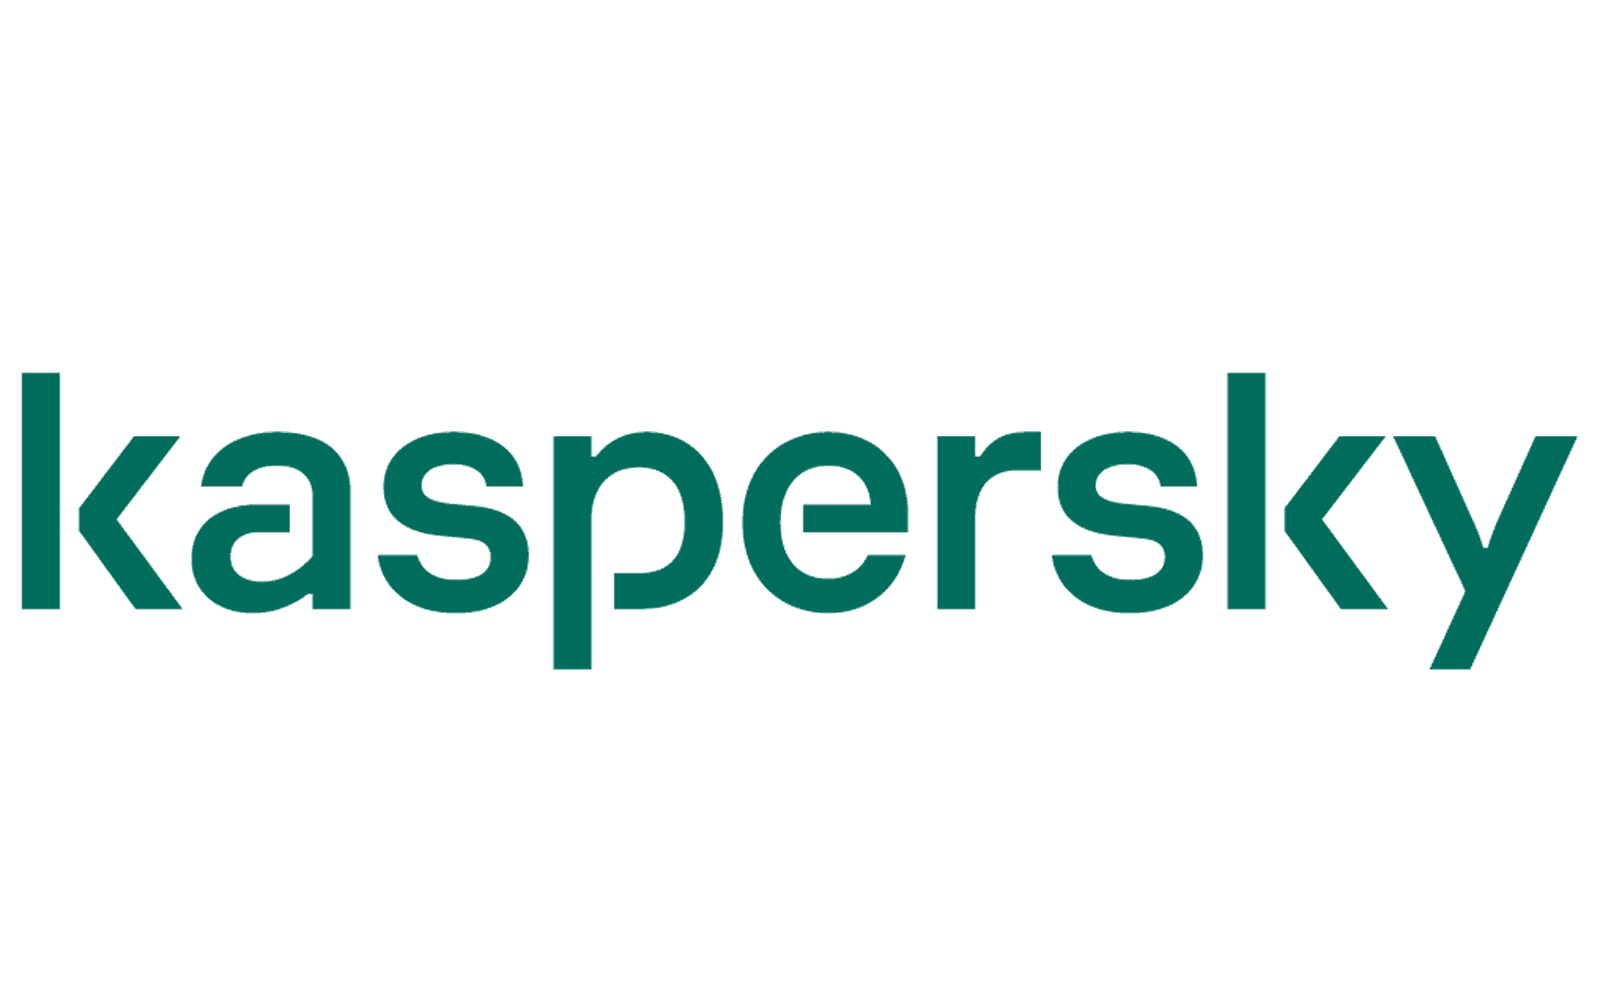 Kaspersky Brand